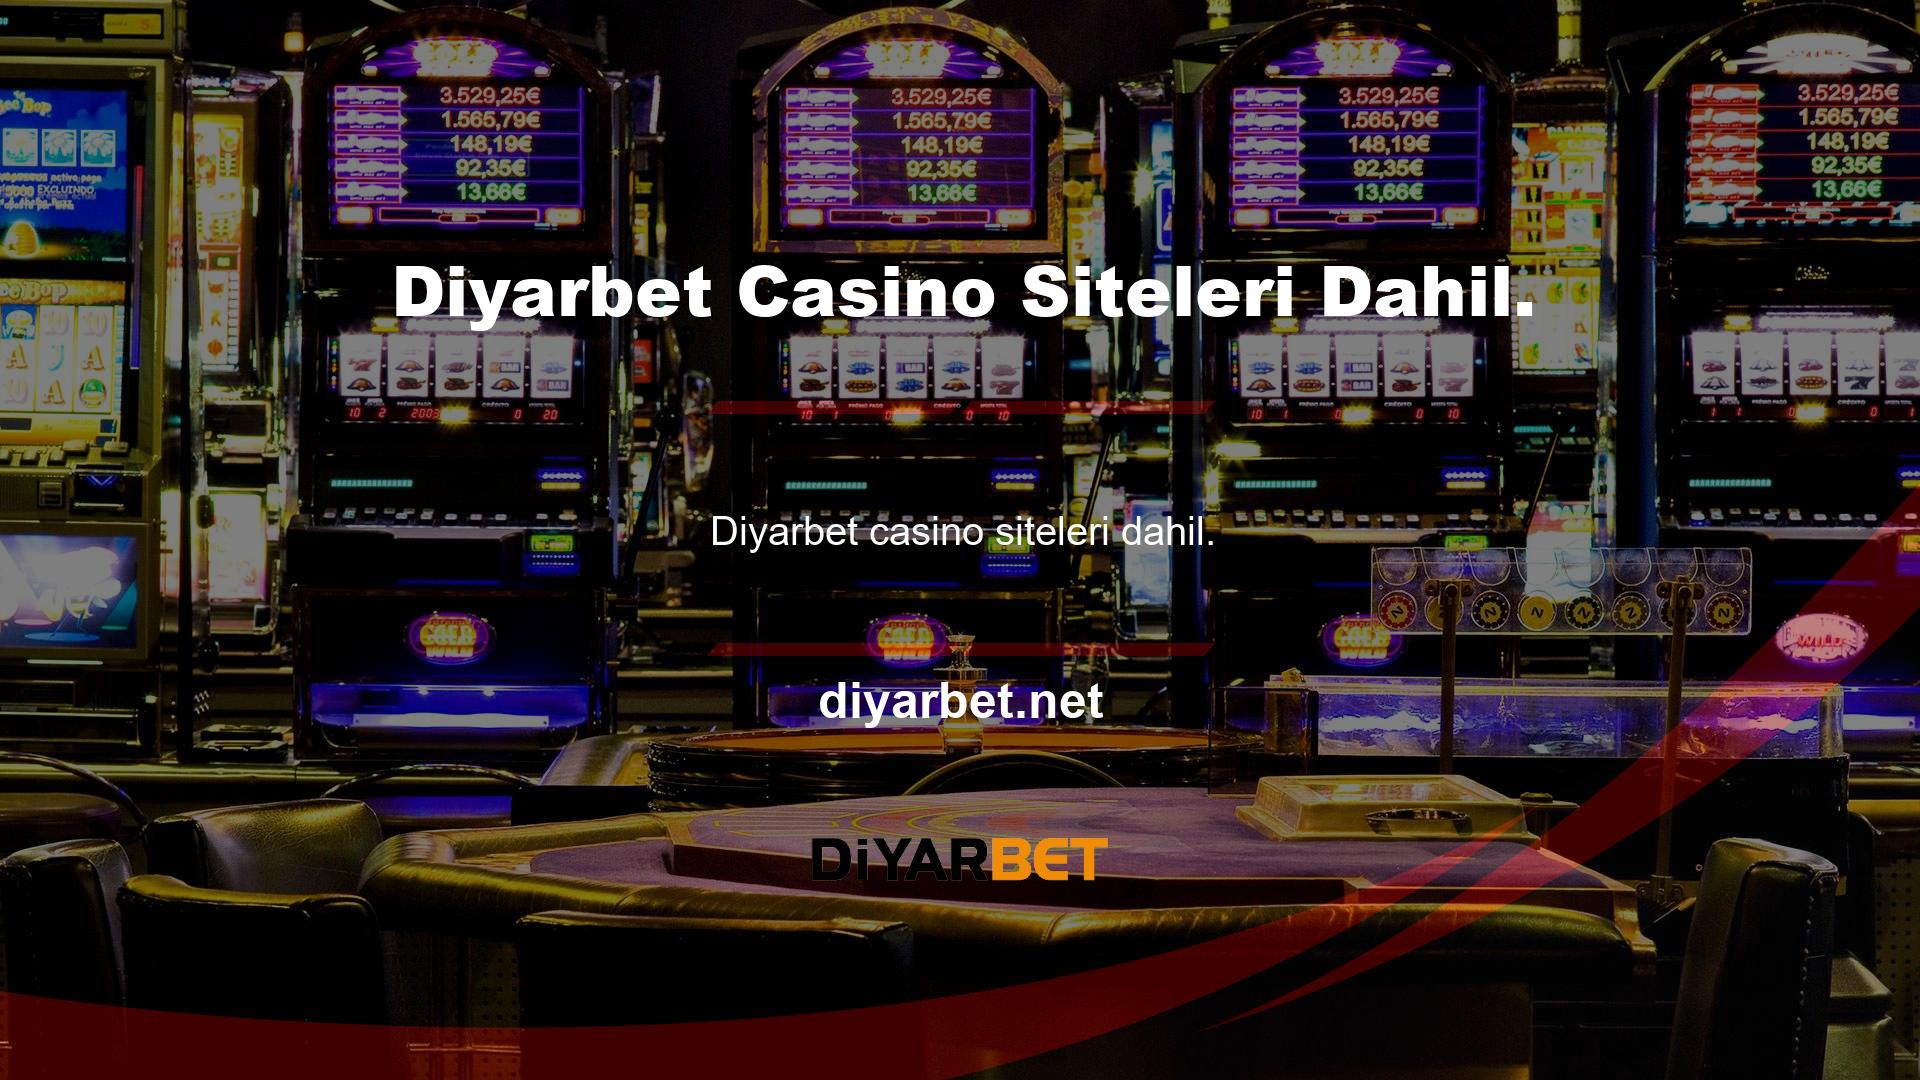 casino sitelerinin kralı Diyarbet canlı yayını, şikayetleri ele almak için canlı bir kamu hizmeti sunuyor